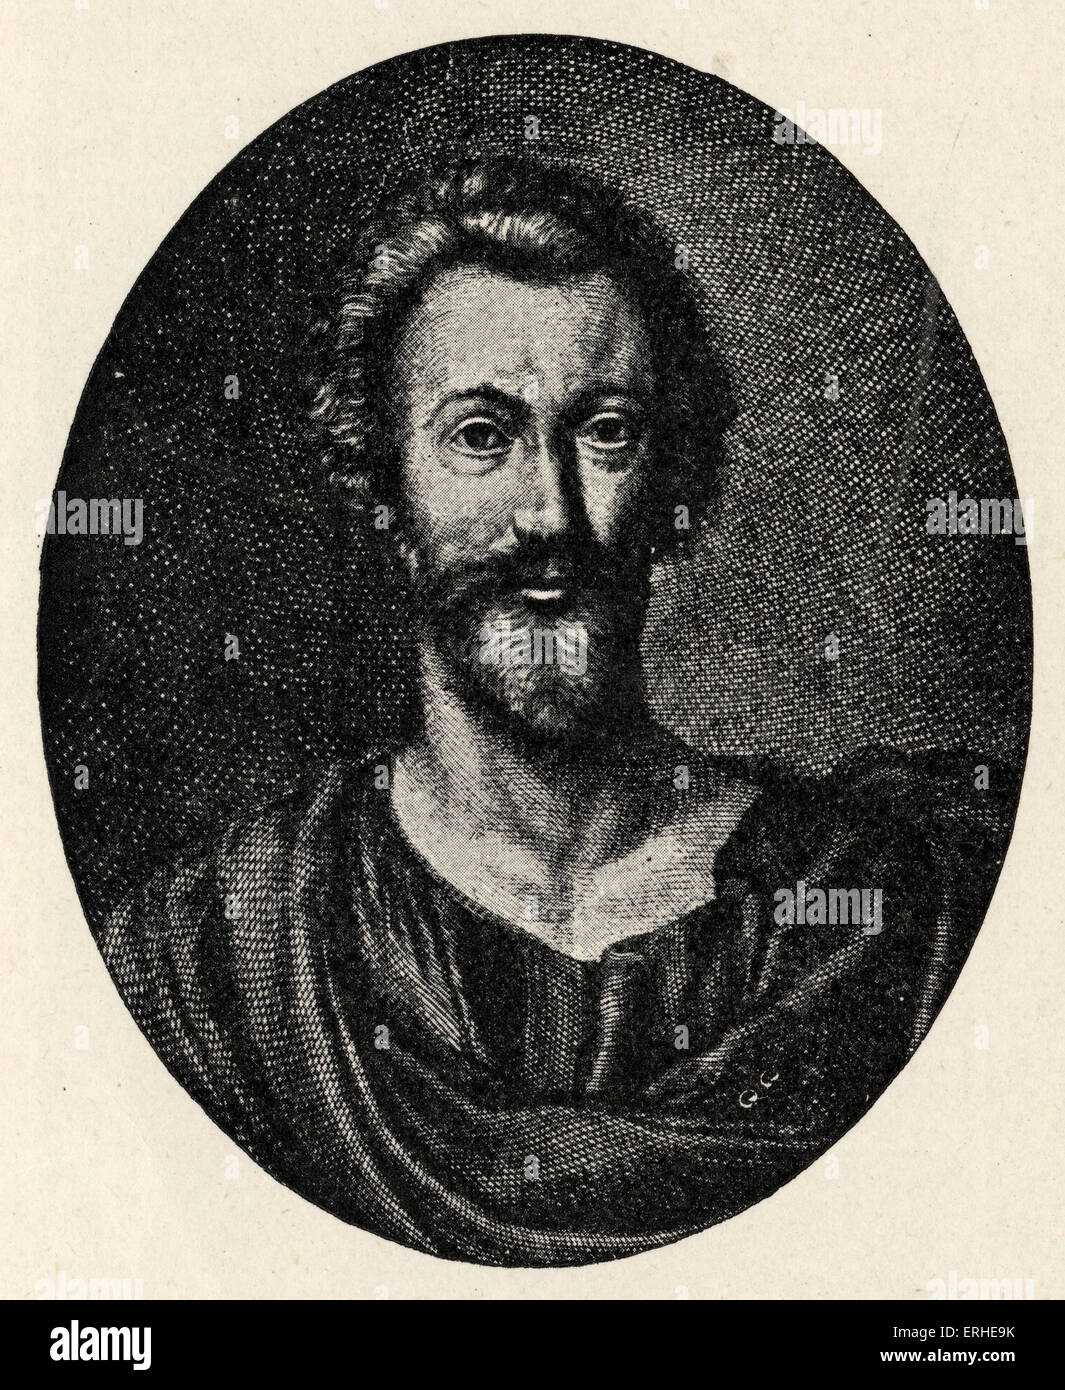 John Donne - retrato. Poeta inglés, 1572-1631 Foto de stock